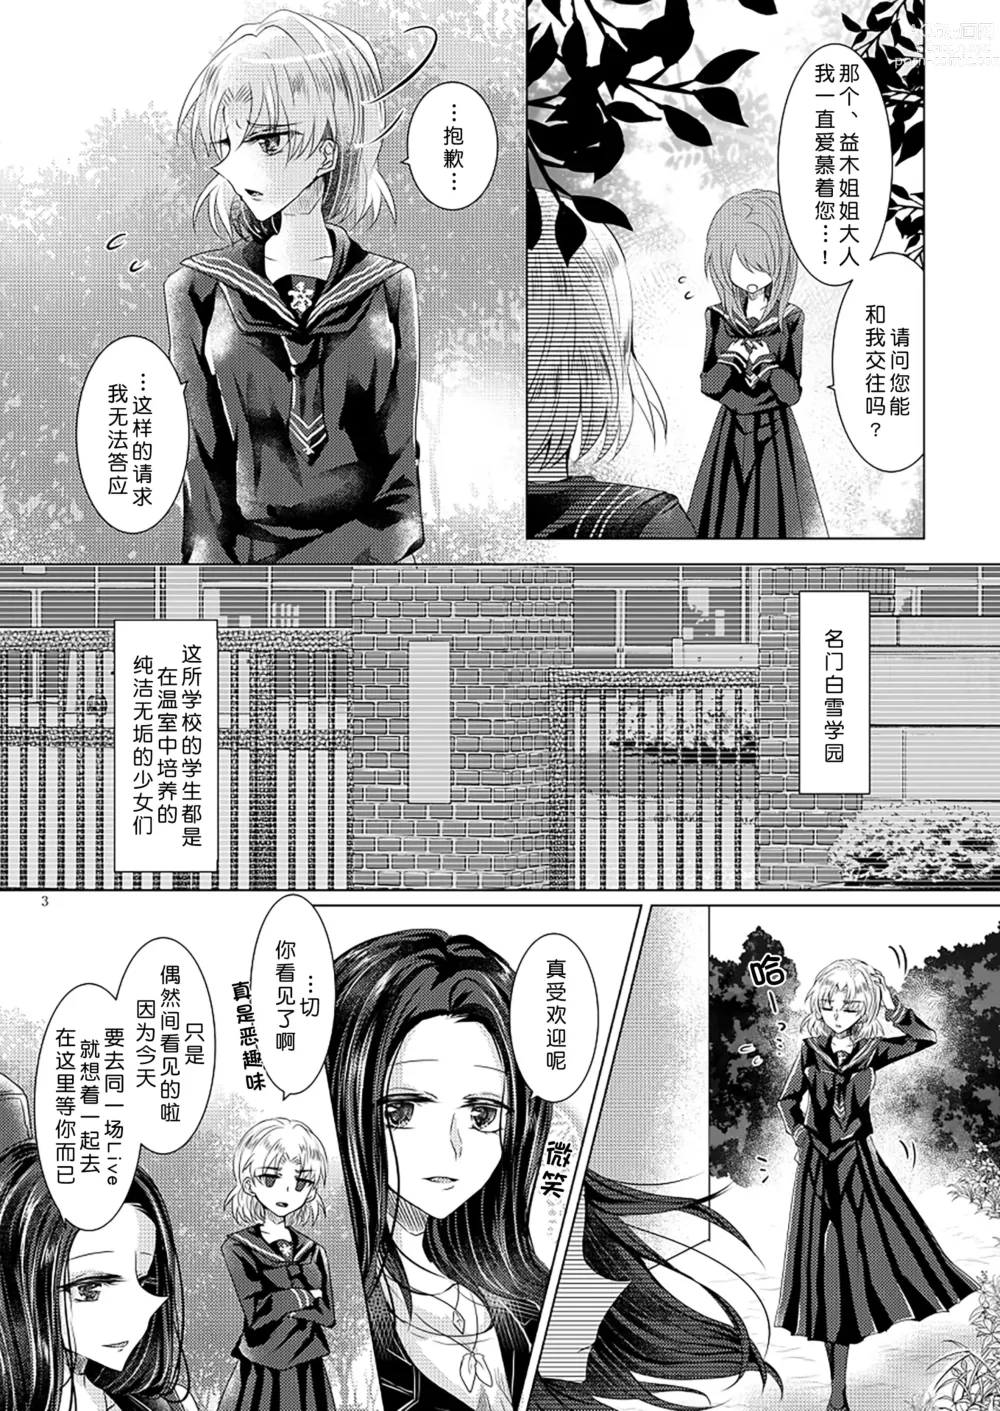 Page 2 of doujinshi 倒错罗曼司